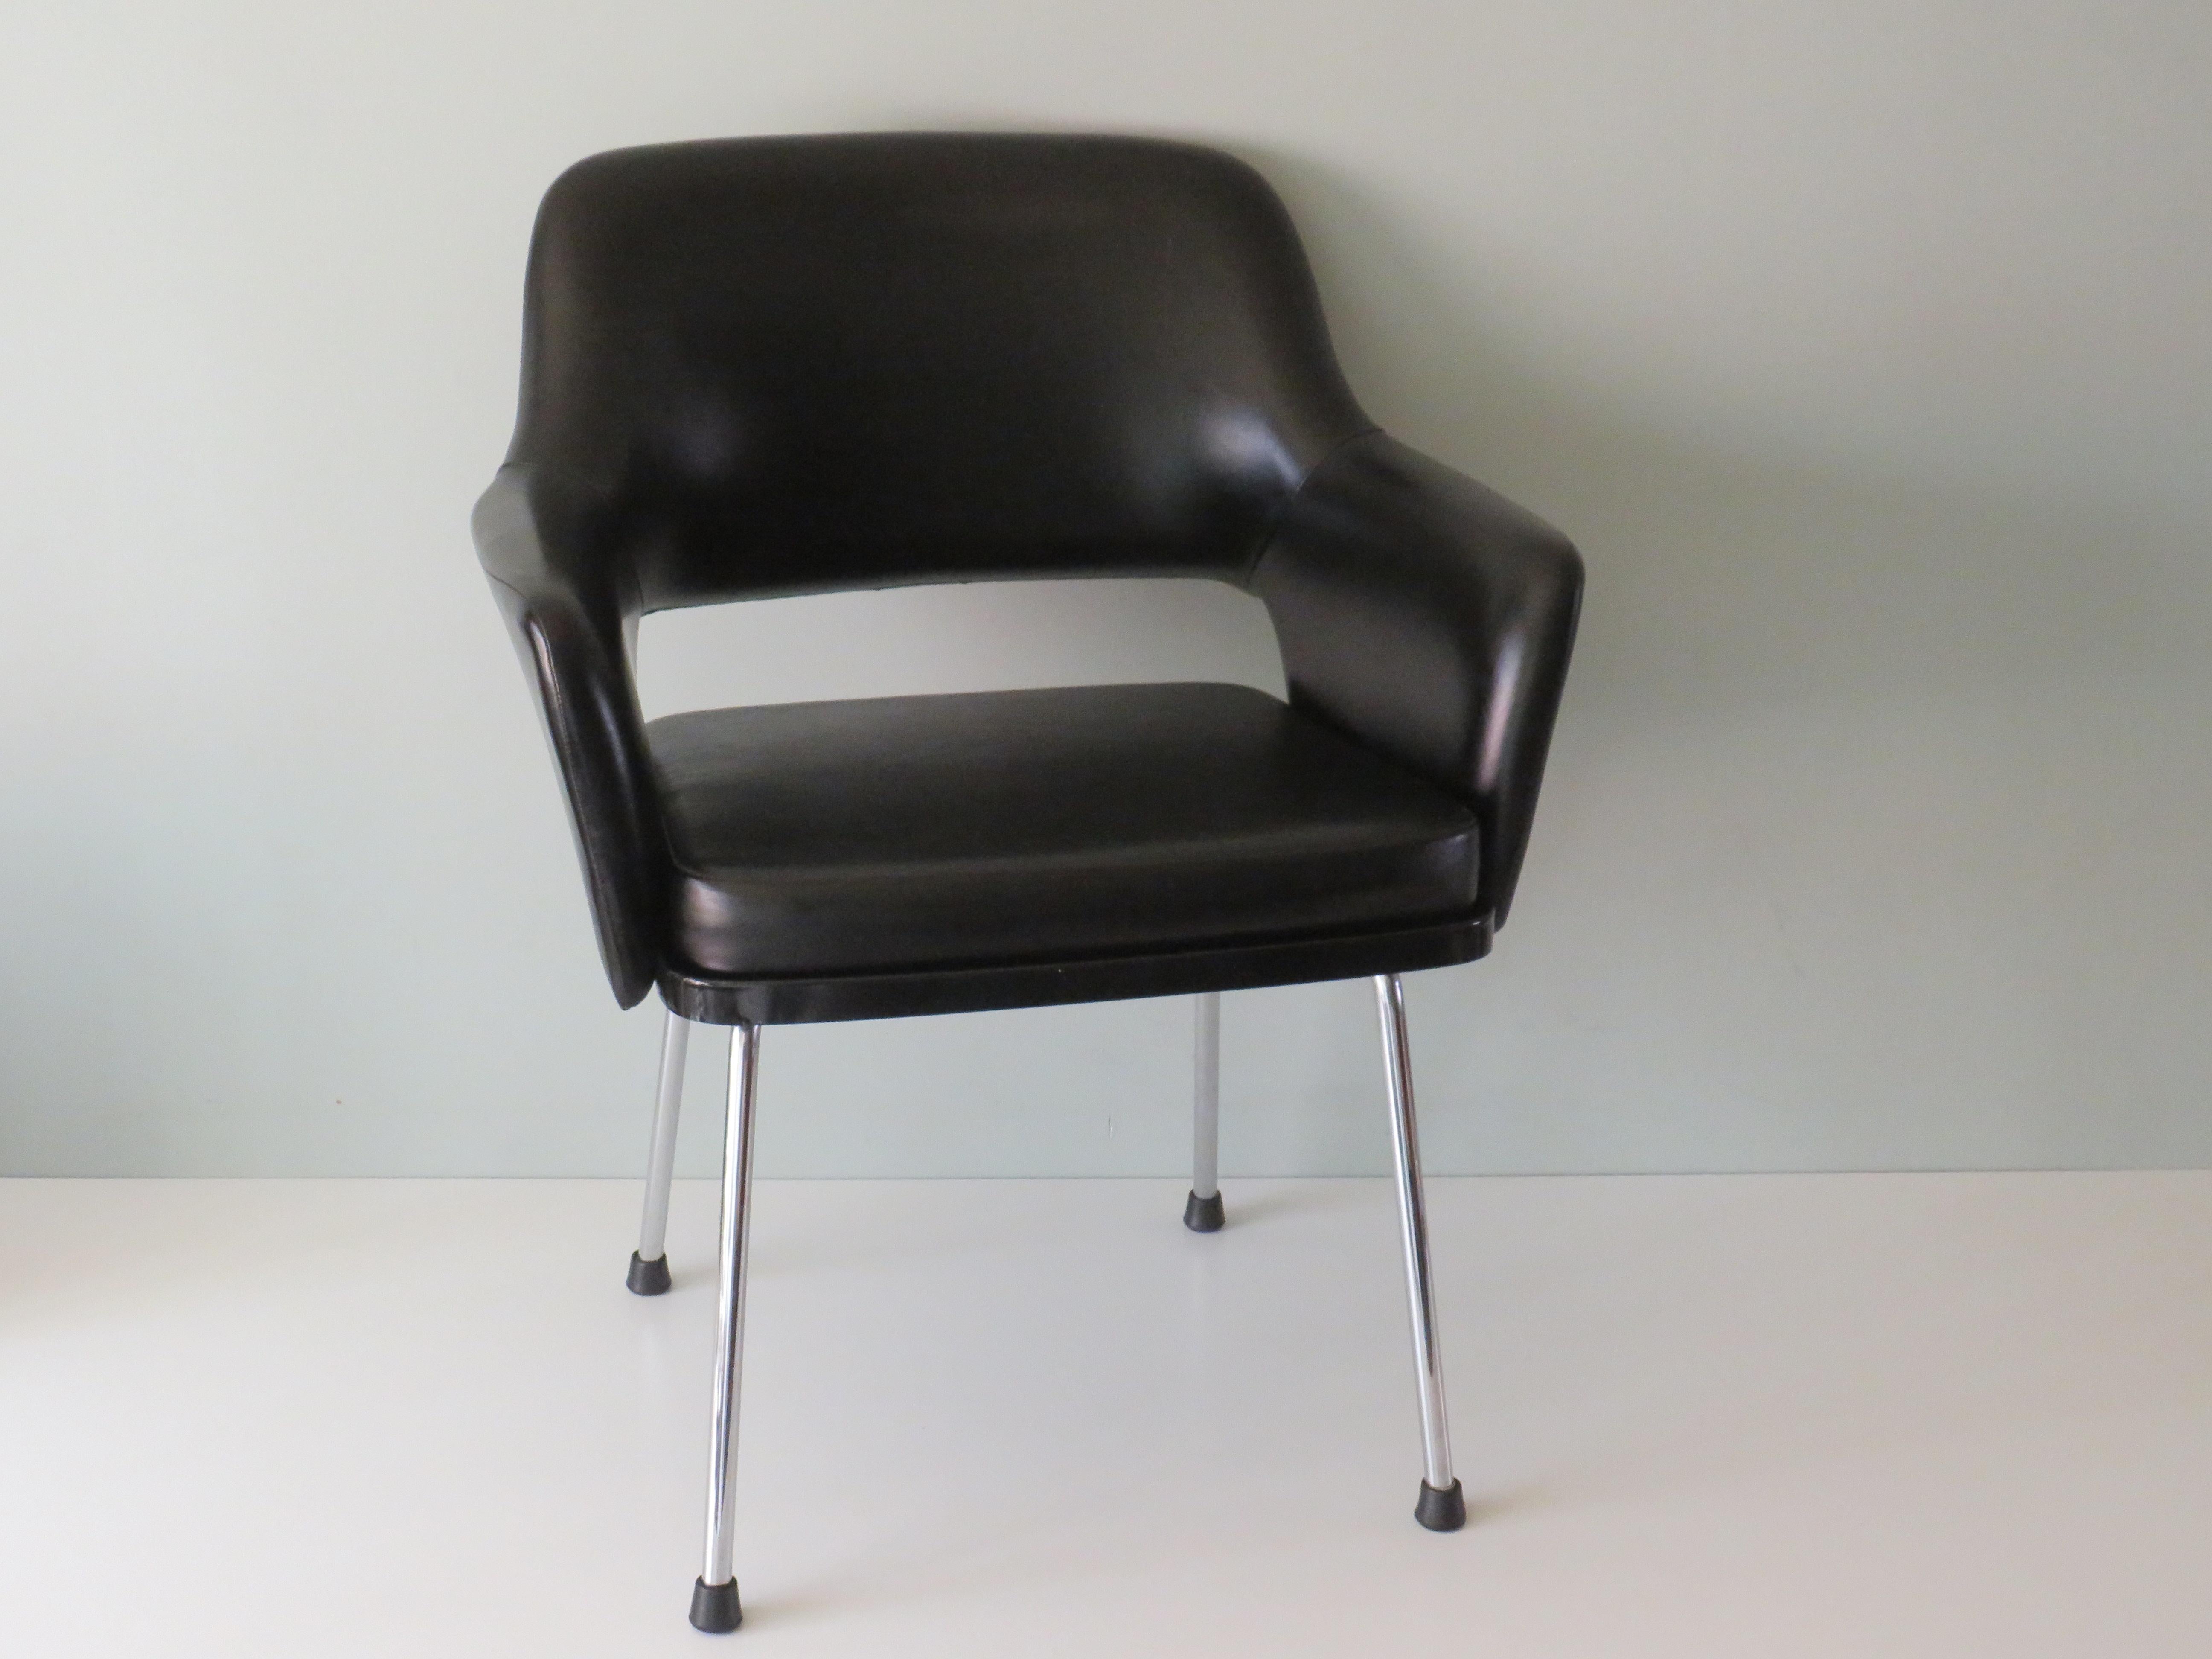 Eleganter, robuster und komfortabler Armlehnenstuhl mit verchromten Beinen und schwarzem Skaipolster.
Die Sitzhöhe des Stuhls beträgt 46 cm. Das gut gefüllte Kopfkissen liegt in einer schwarzen Plastikwanne.
Der Stuhl ist in Anbetracht seines